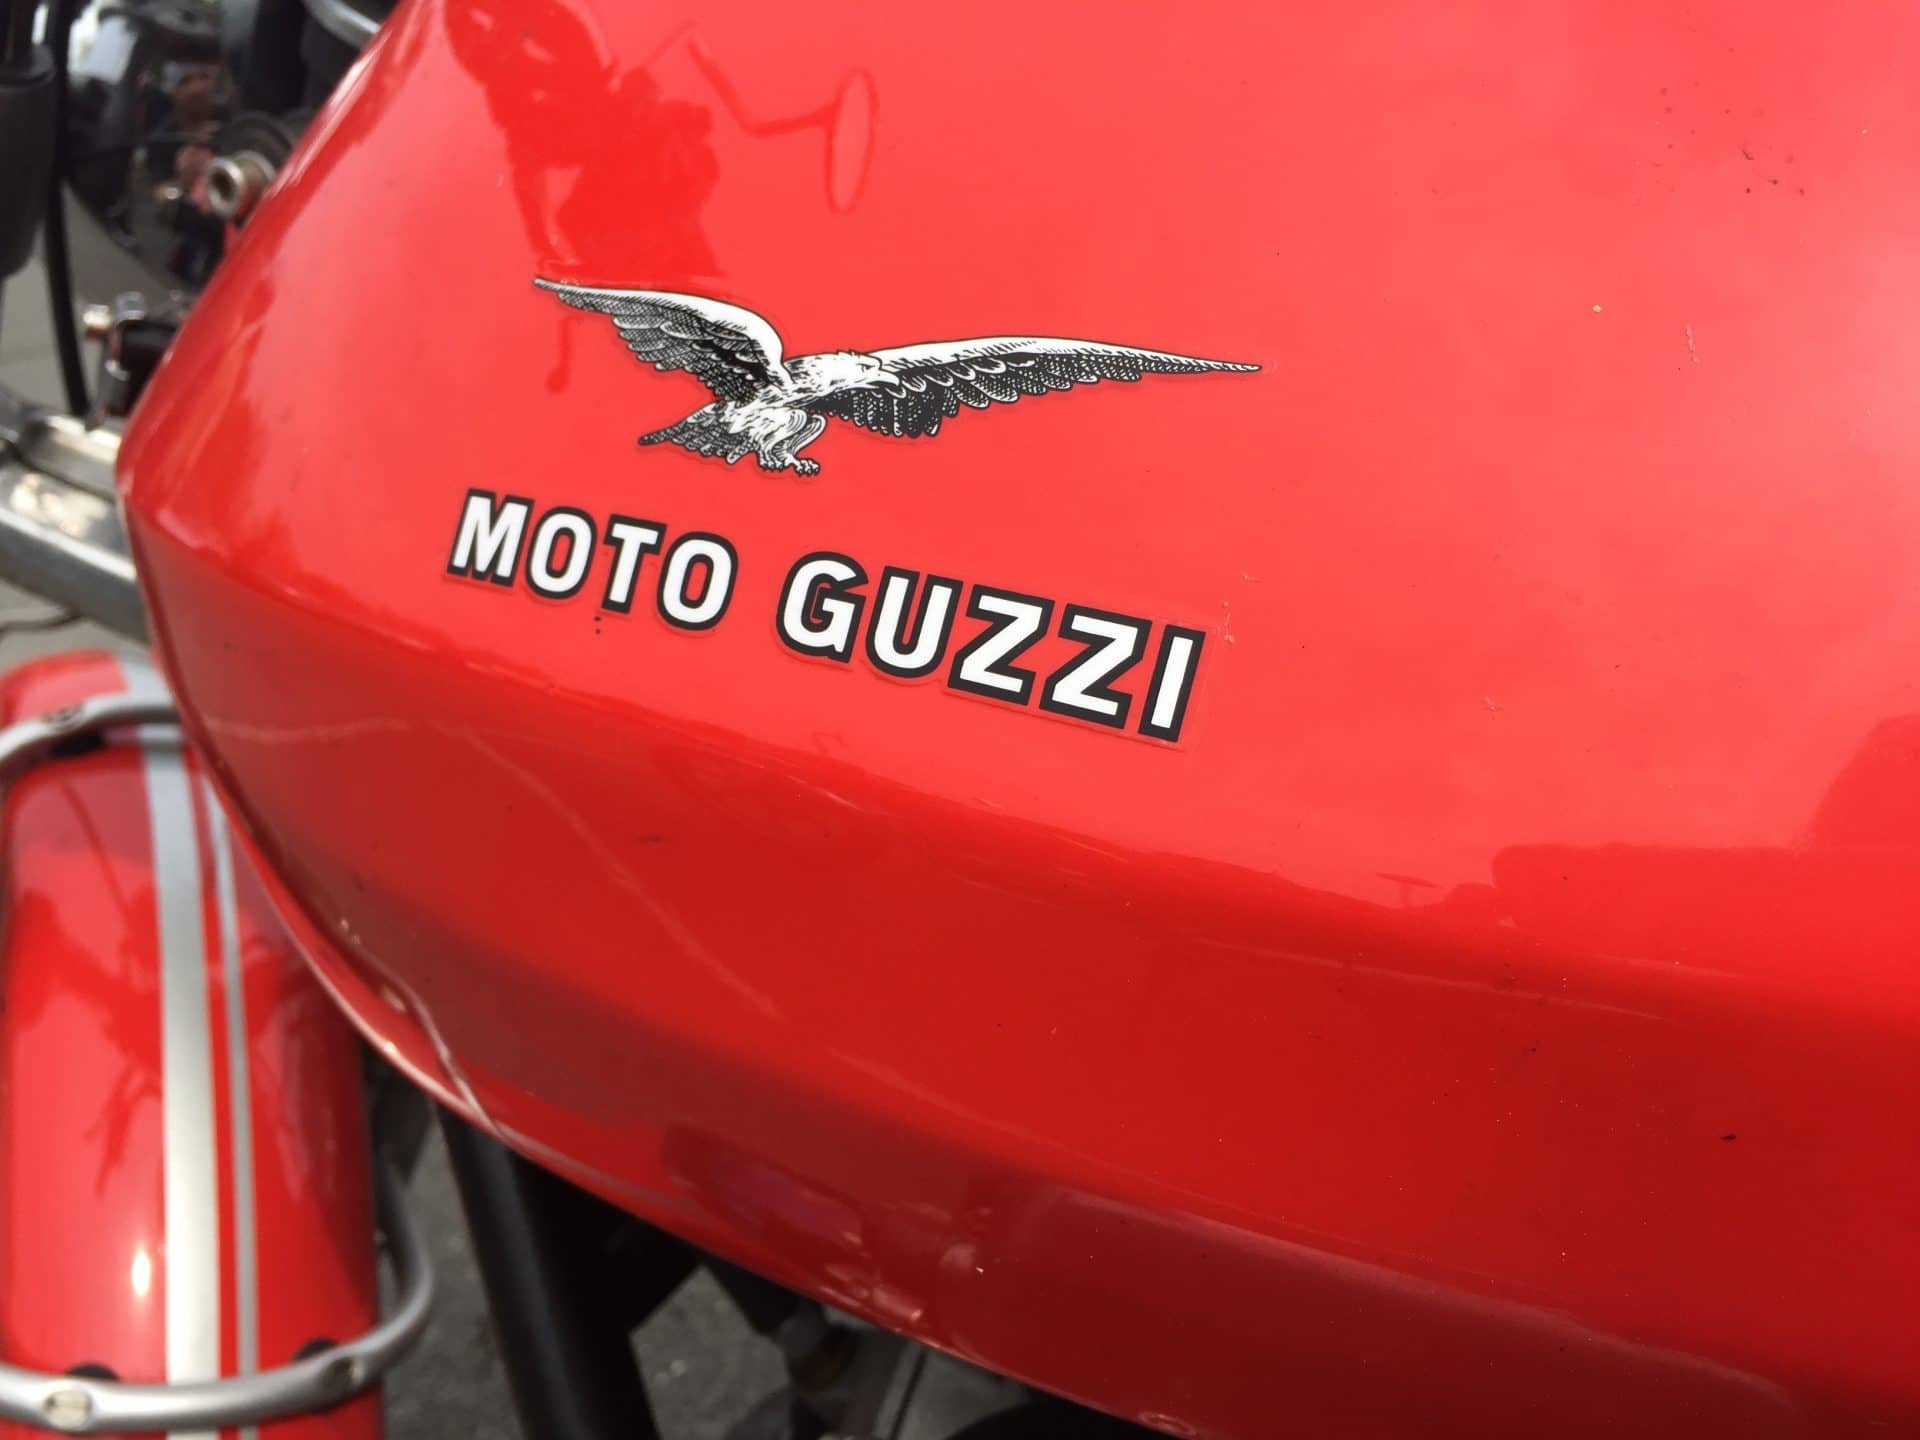 Moto guzzi rouge